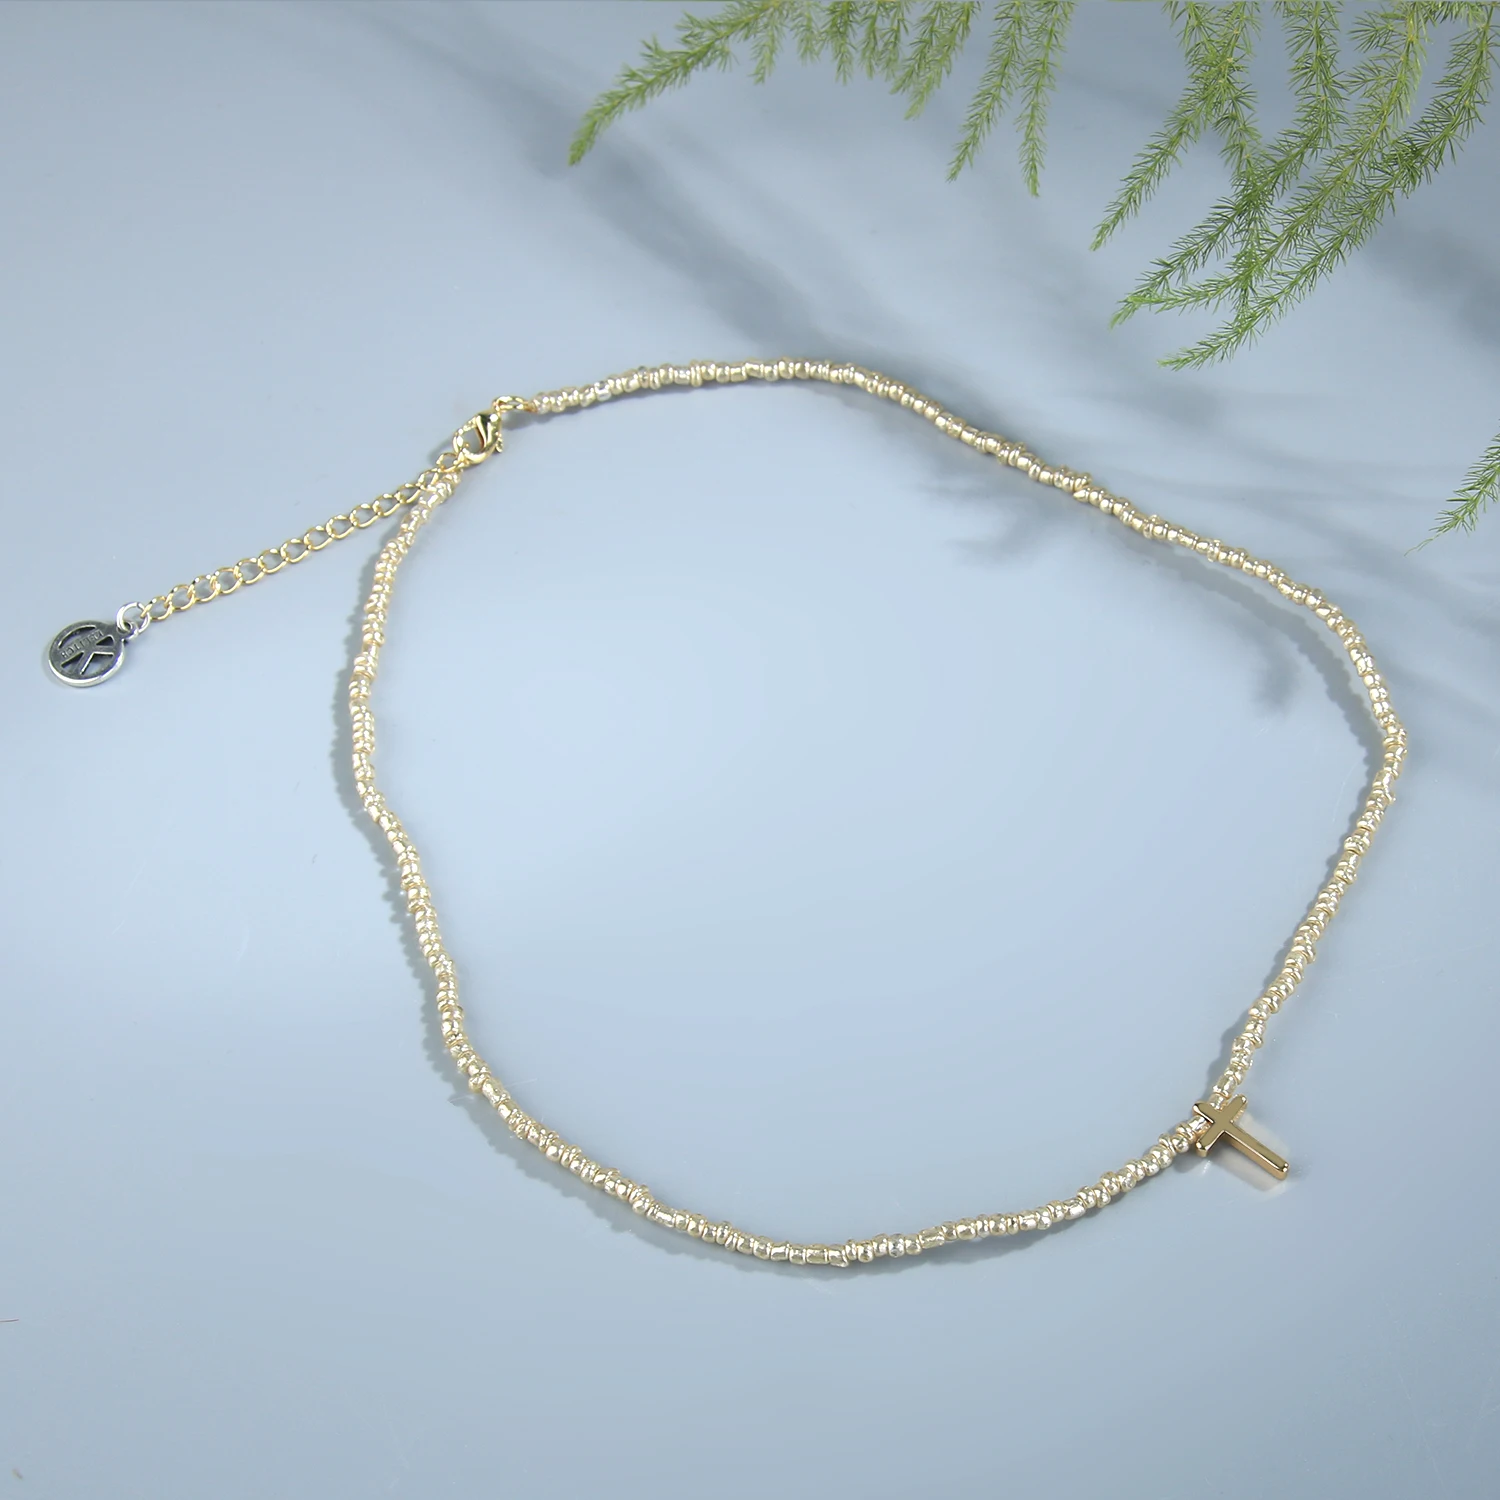 KELITCH Mujeres Miyuki Cruz Colgante de Collares de Perlas de Cristal Collar de la Amistad de la Joyería Gargantillas hechas a Mano Joyería al por mayor - 1